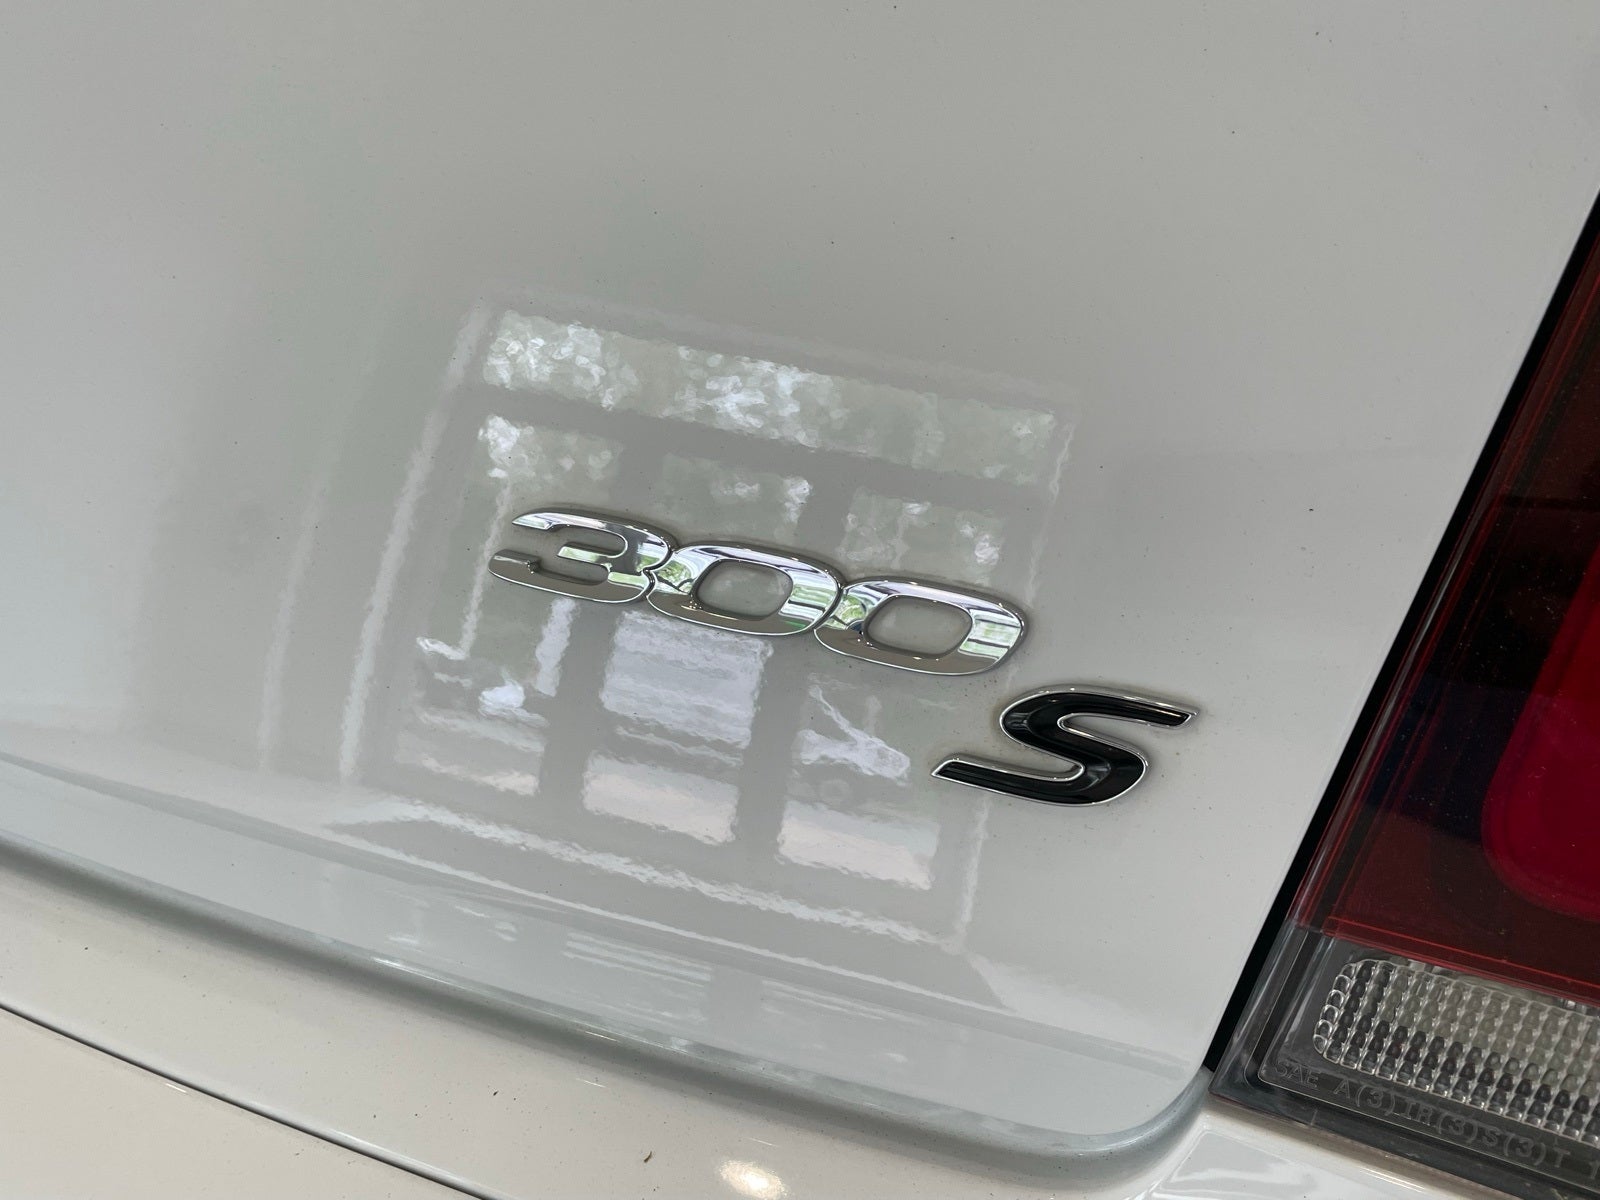 2017 Chrysler 300 S